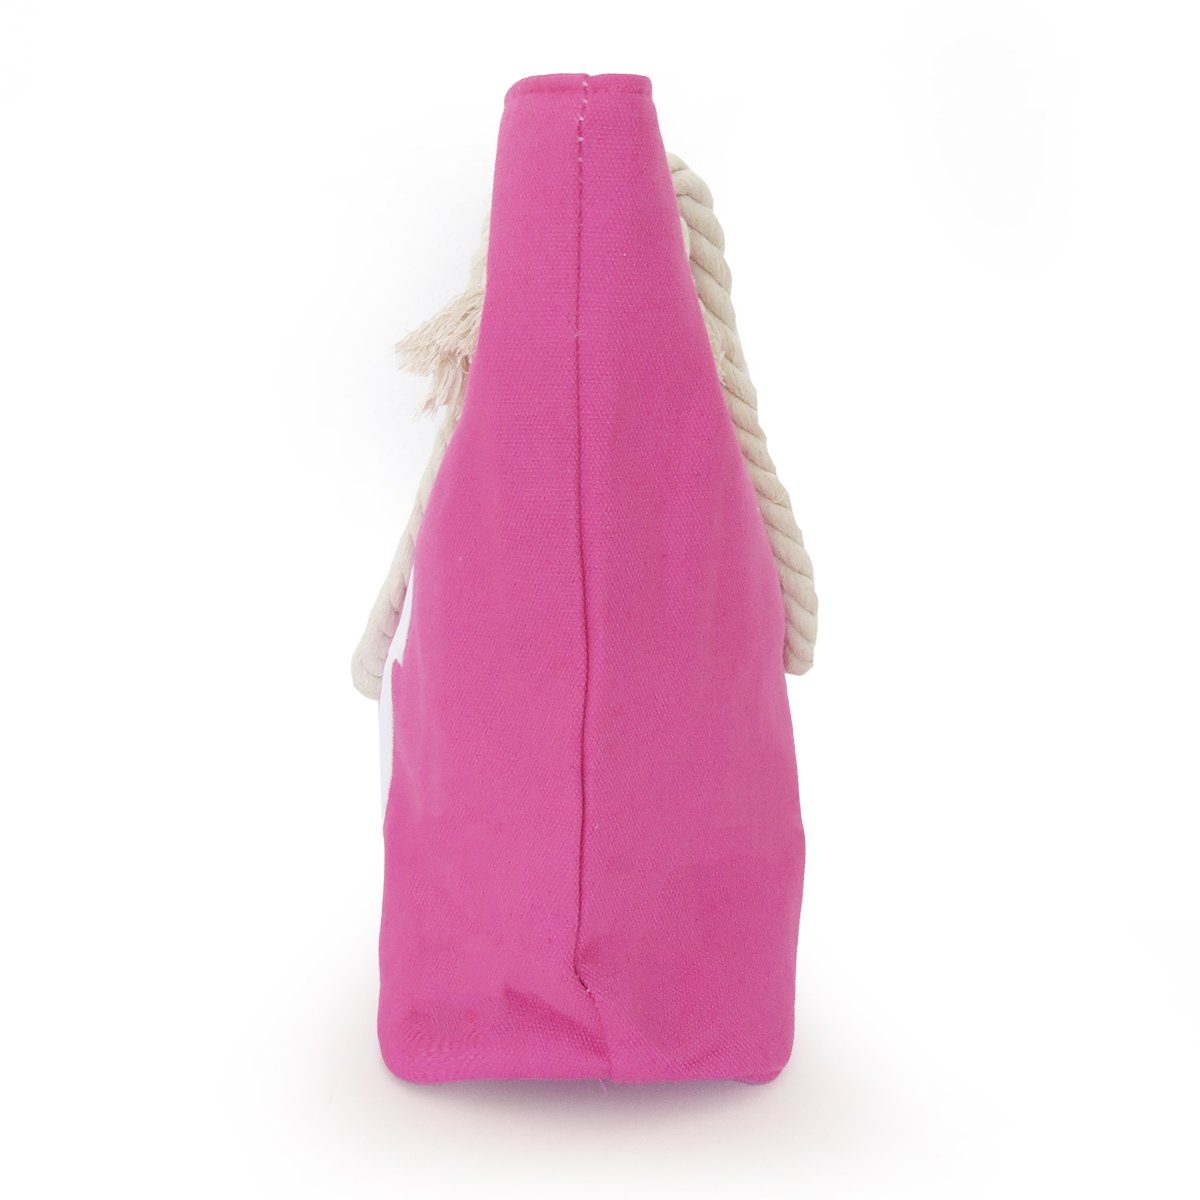 bestickt Strandtasche Sonia Shopper Anker Reißverschluss pink, Innentasche Originelli kleine Seilkordel mit Umhängetasche maritim